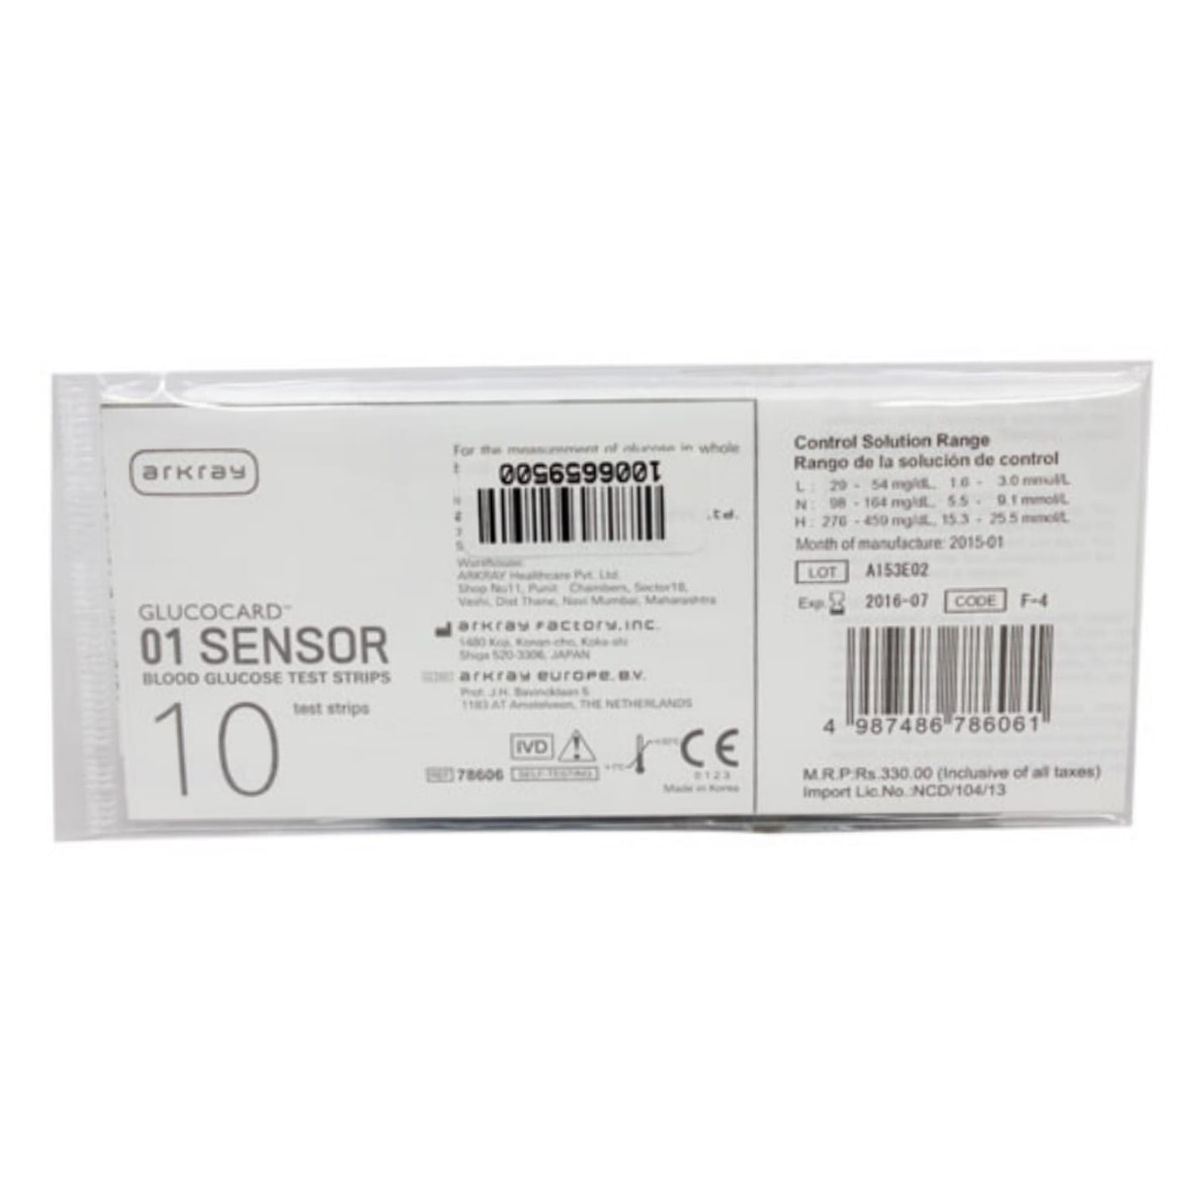 Buy Glucocard 01 Sensor Blood Glucose Test Strip 10's Online